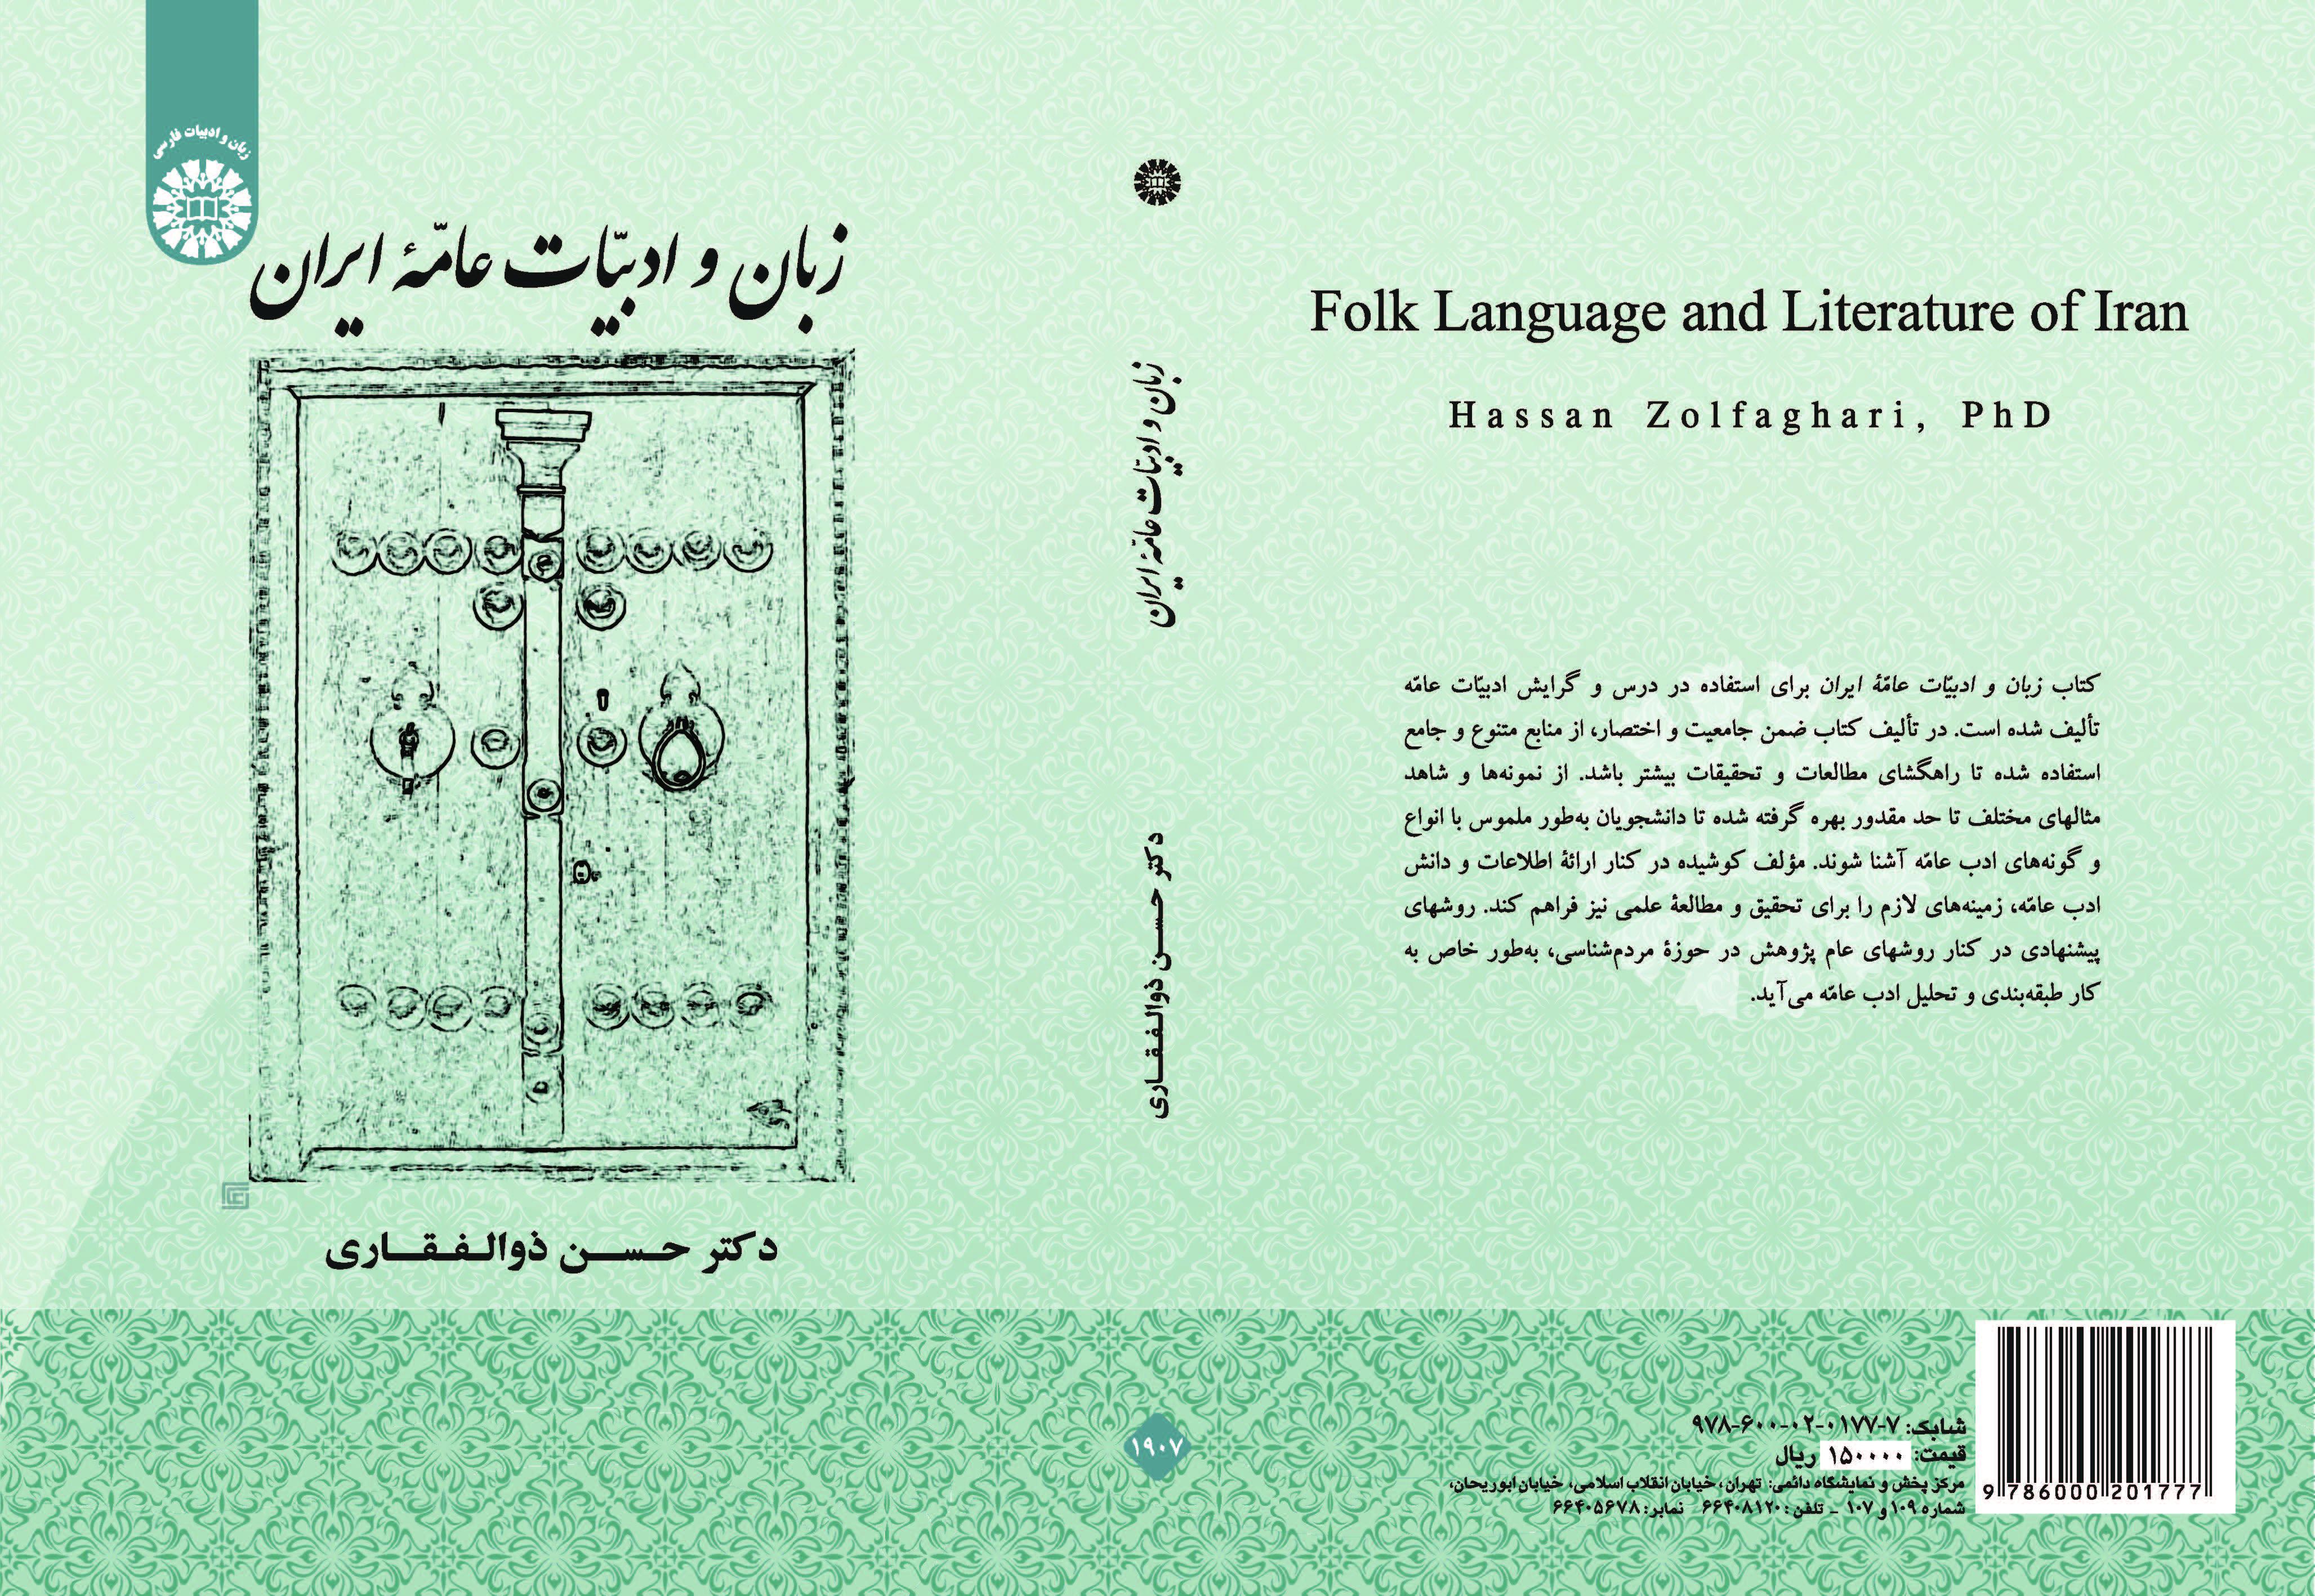 اللغة والأدب الشعبي والعامي لإيران